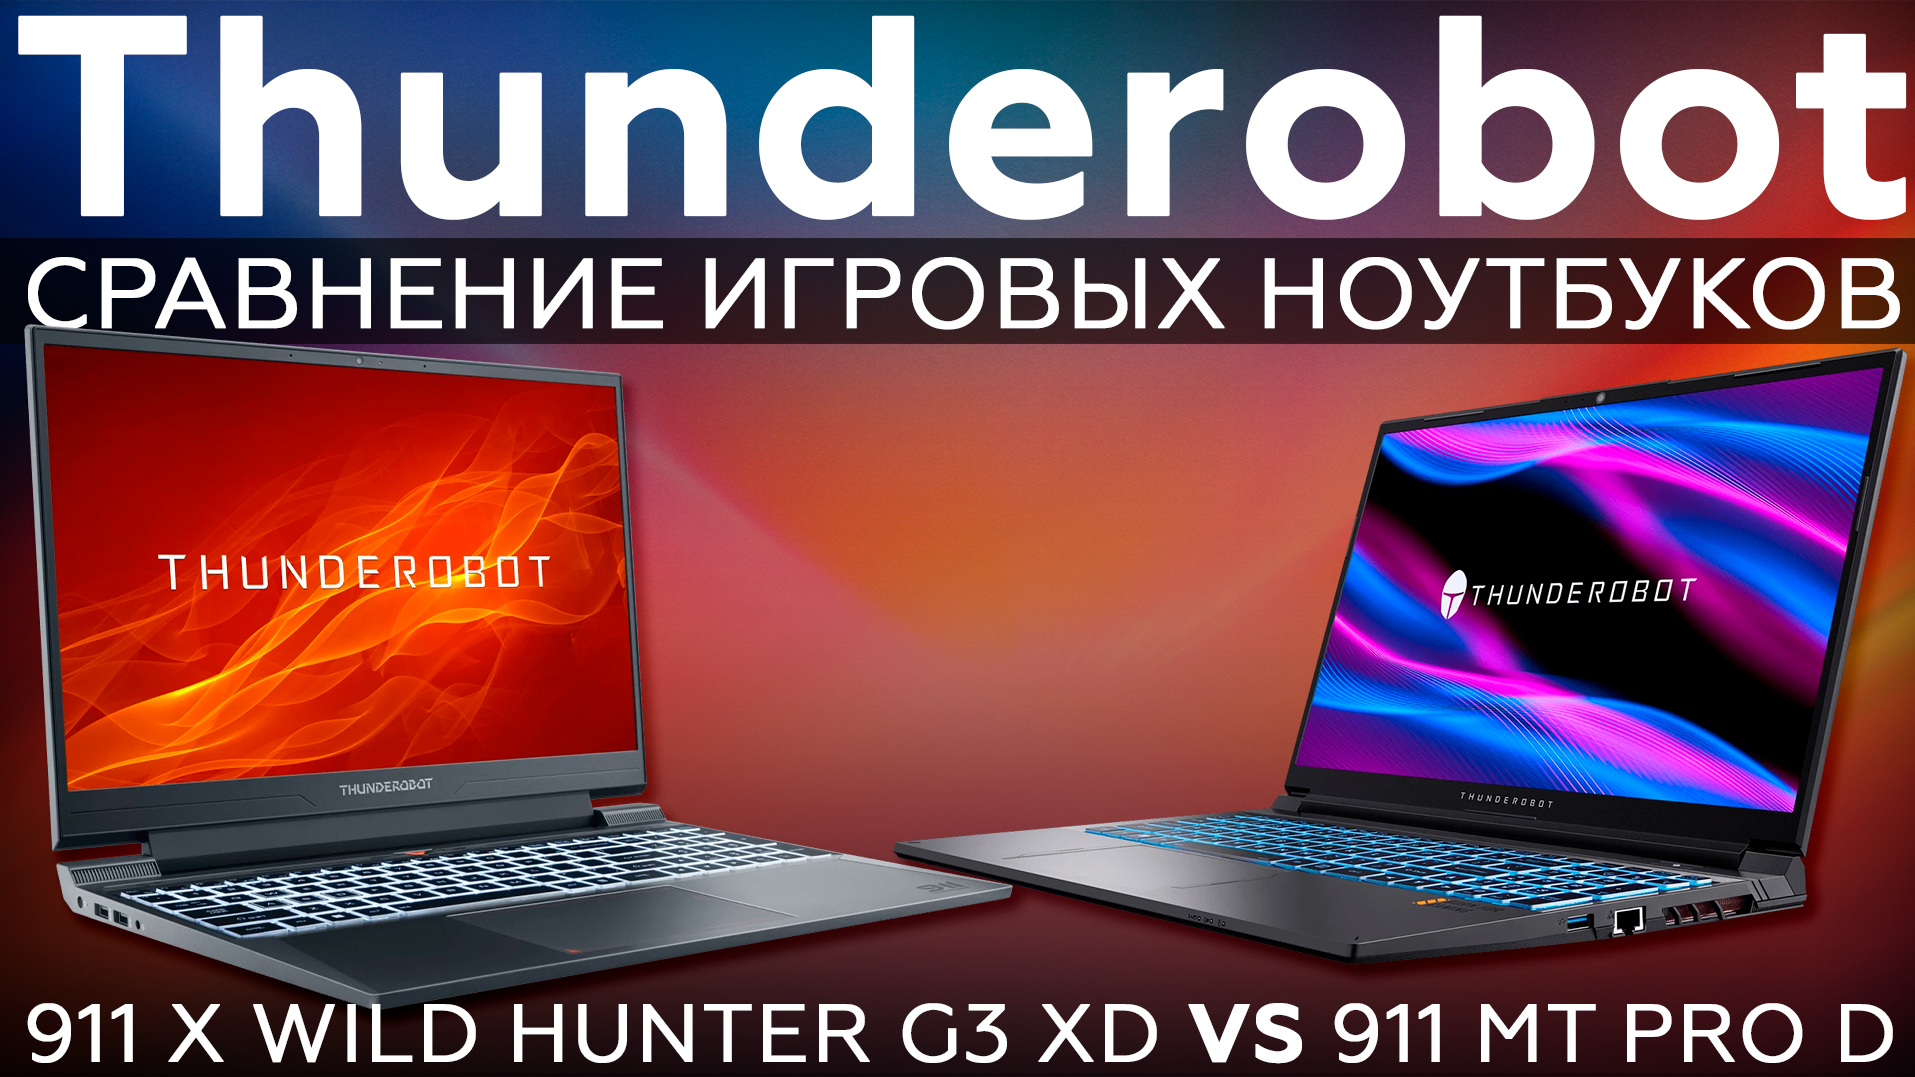 Сравнительный обзор игровых ноутбуков Thunderobot 911 X Wild Hunter G3 XD и Thunderobot 911 MT Pro D